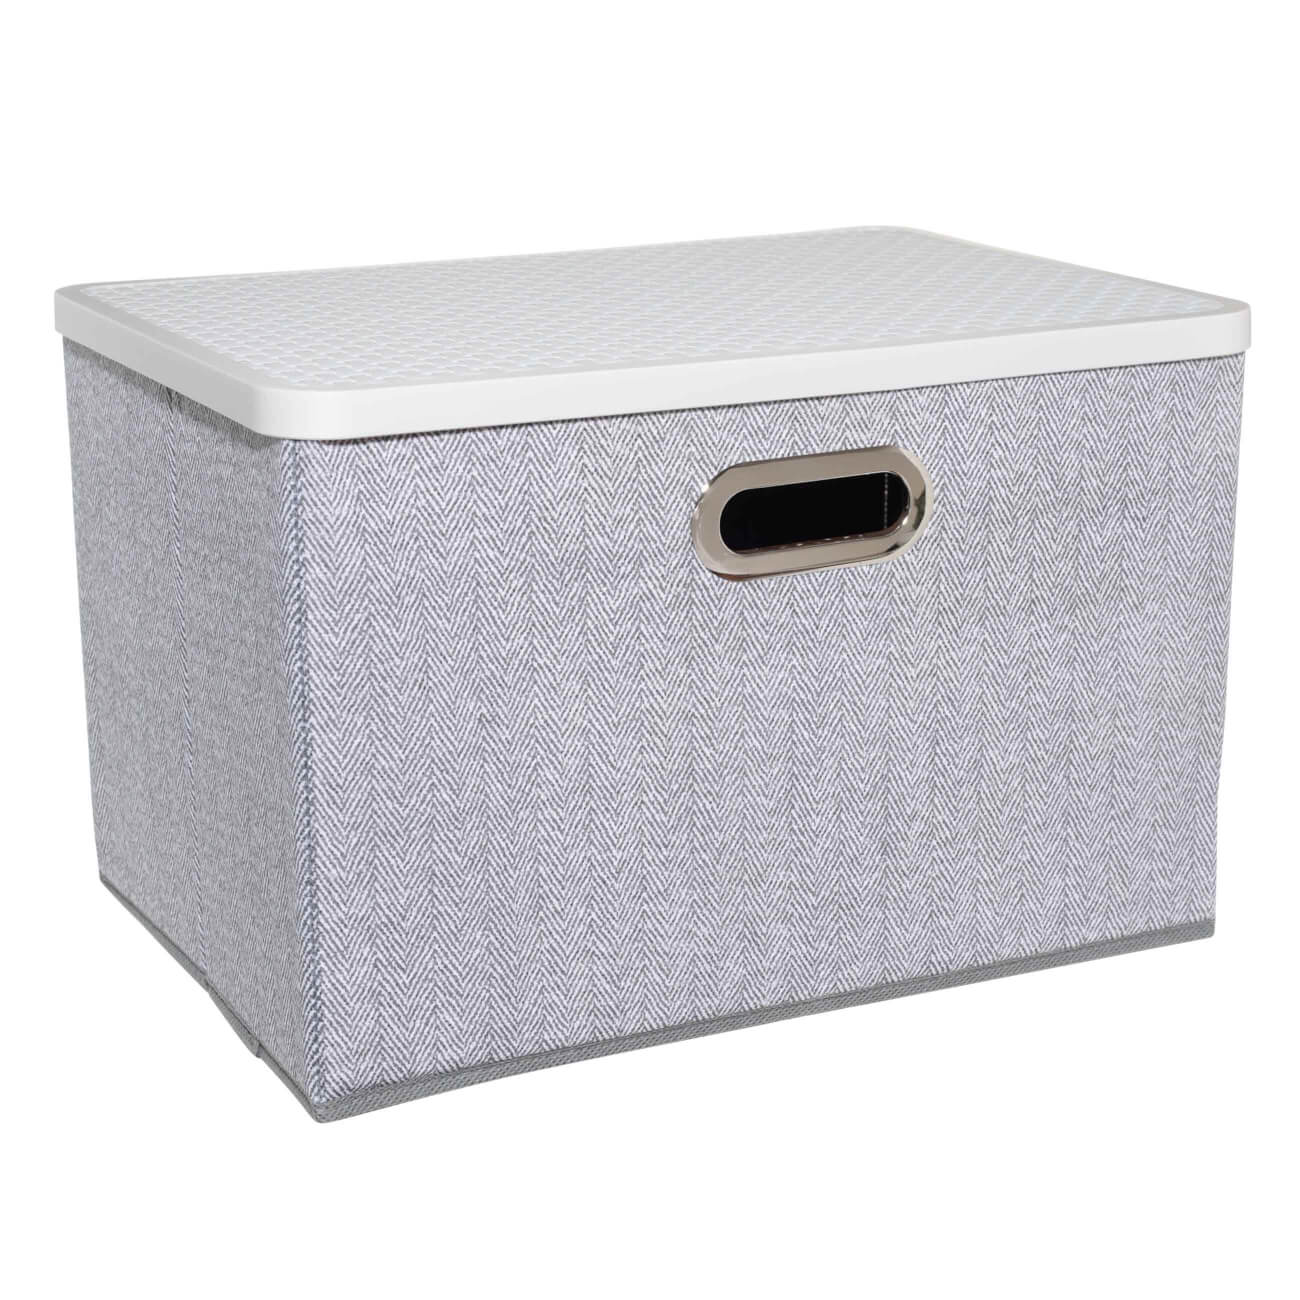 Органайзер-короб для вещей, 38х26 см, с ручками/крышкой, текстиль/пластик, серый, Pedant new